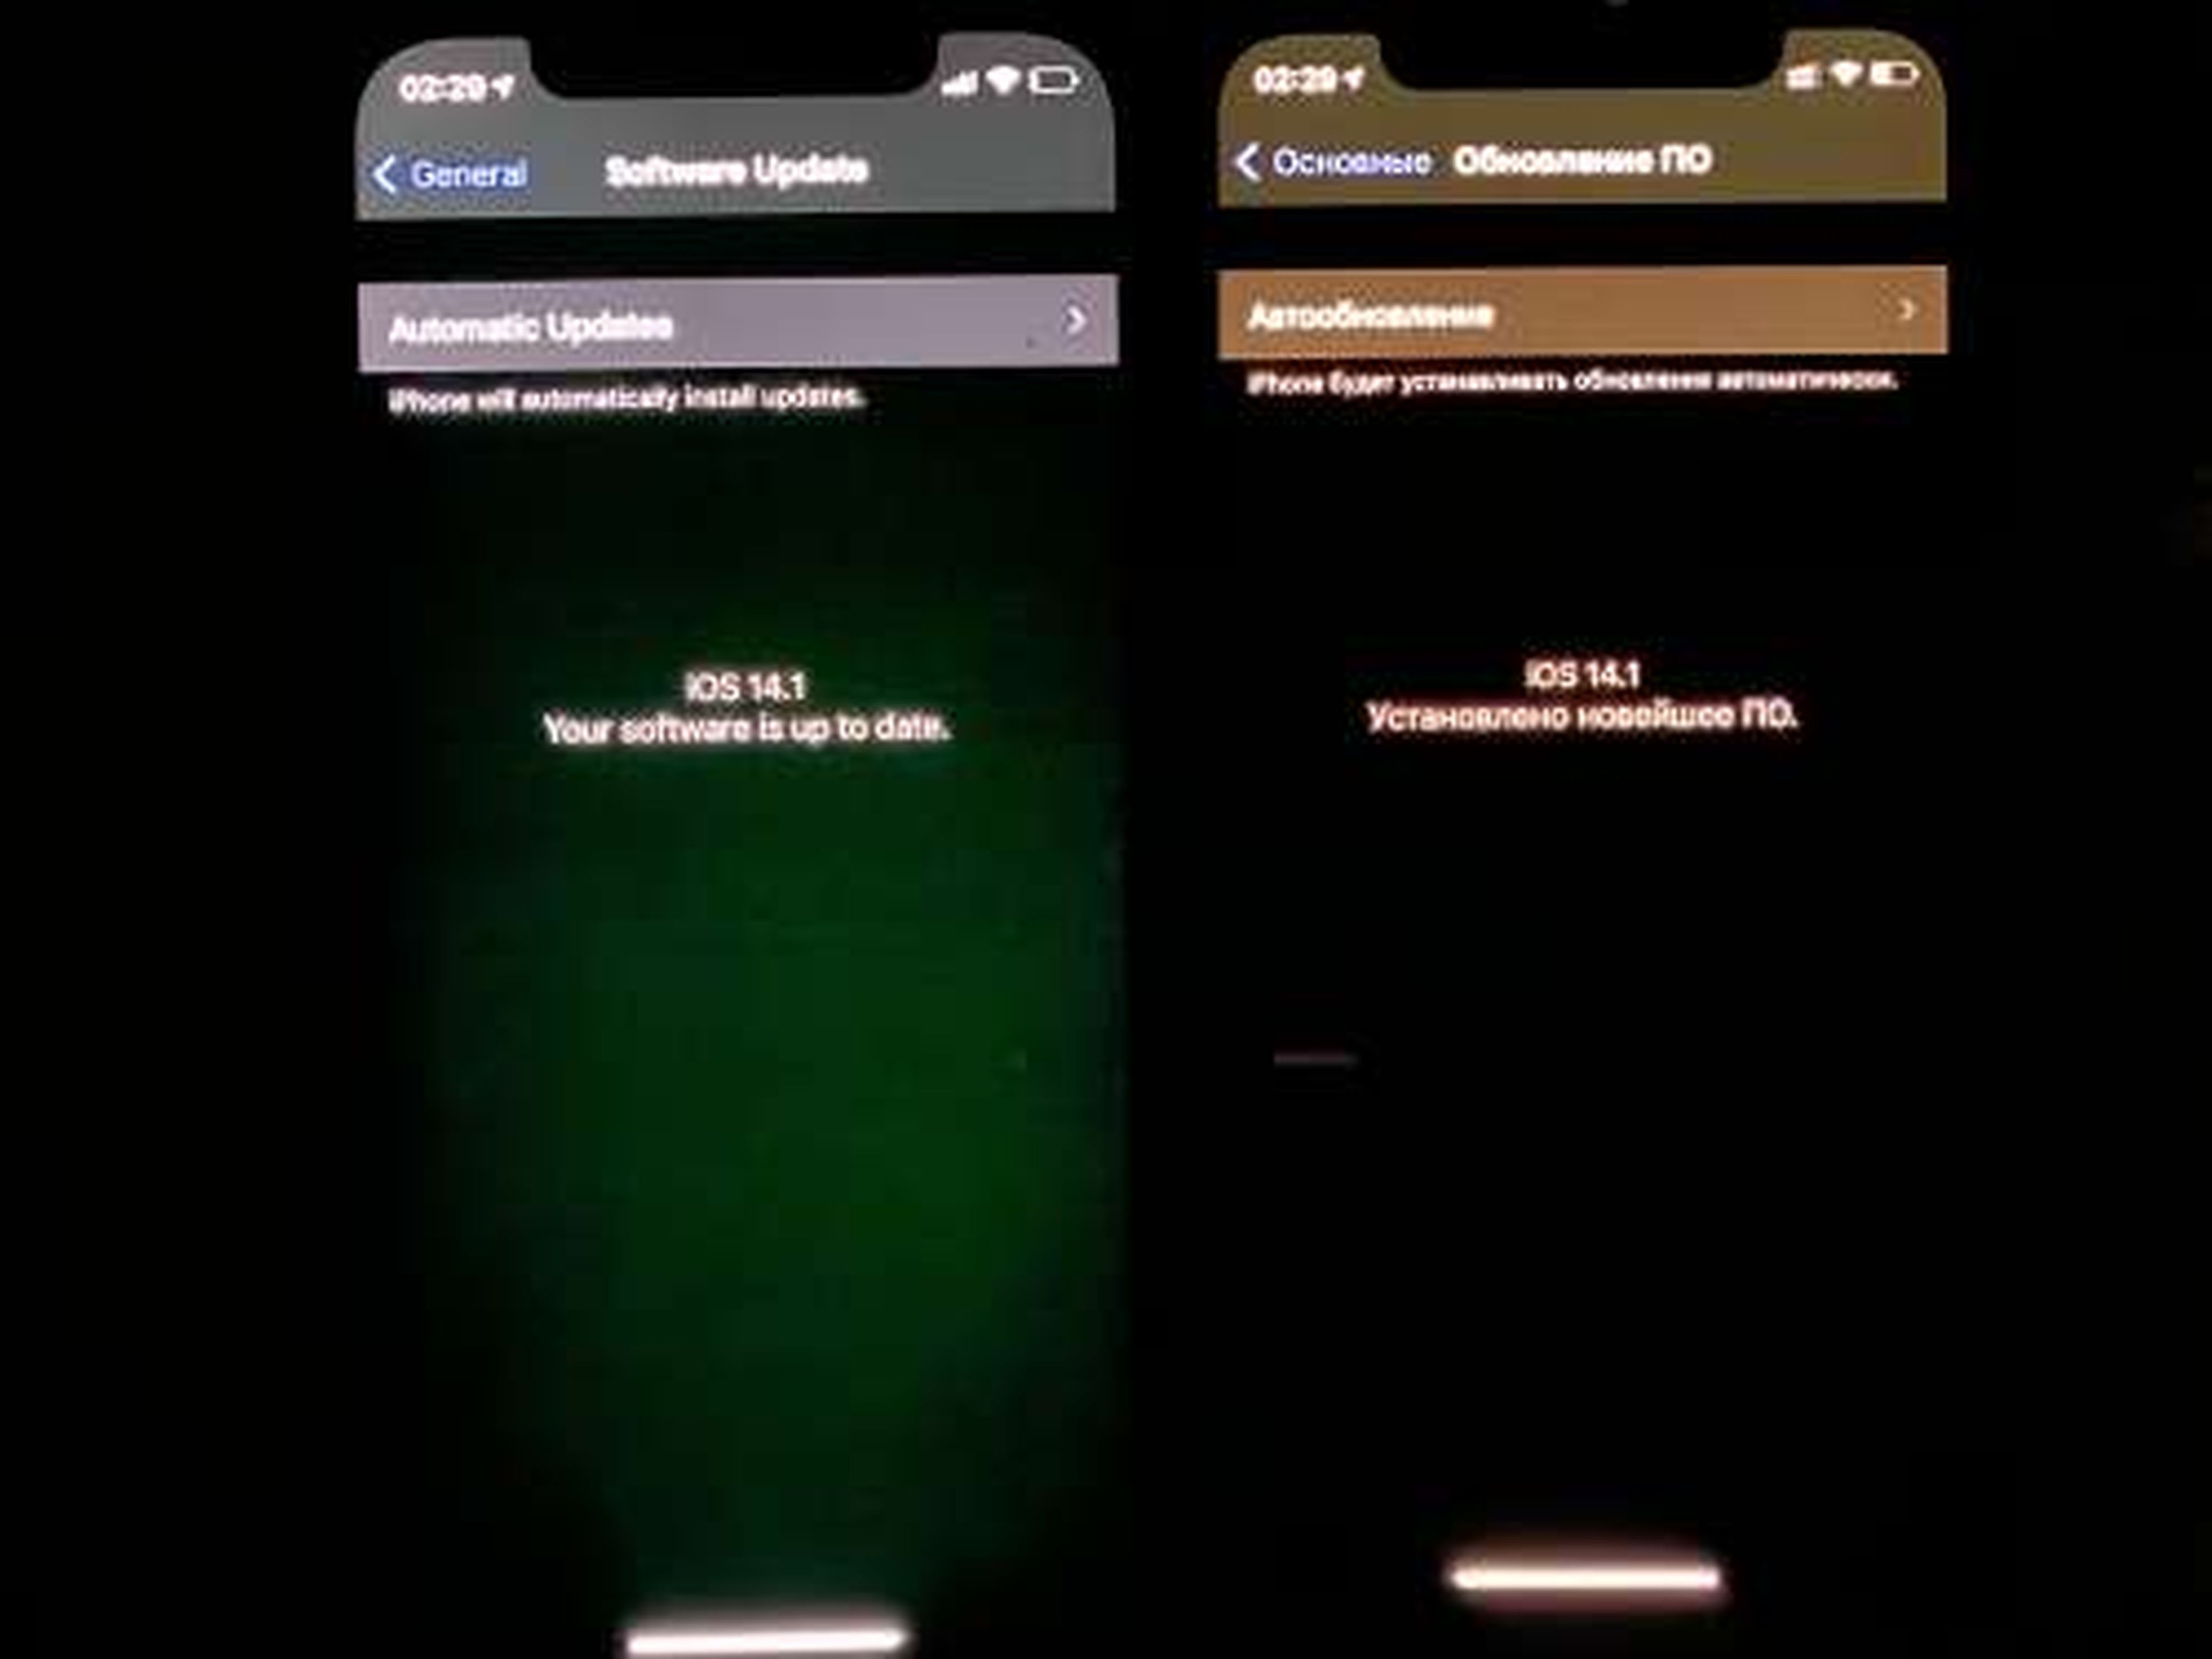 Problema de la pantalla verde del iPhone 11: cómo solucionarlo